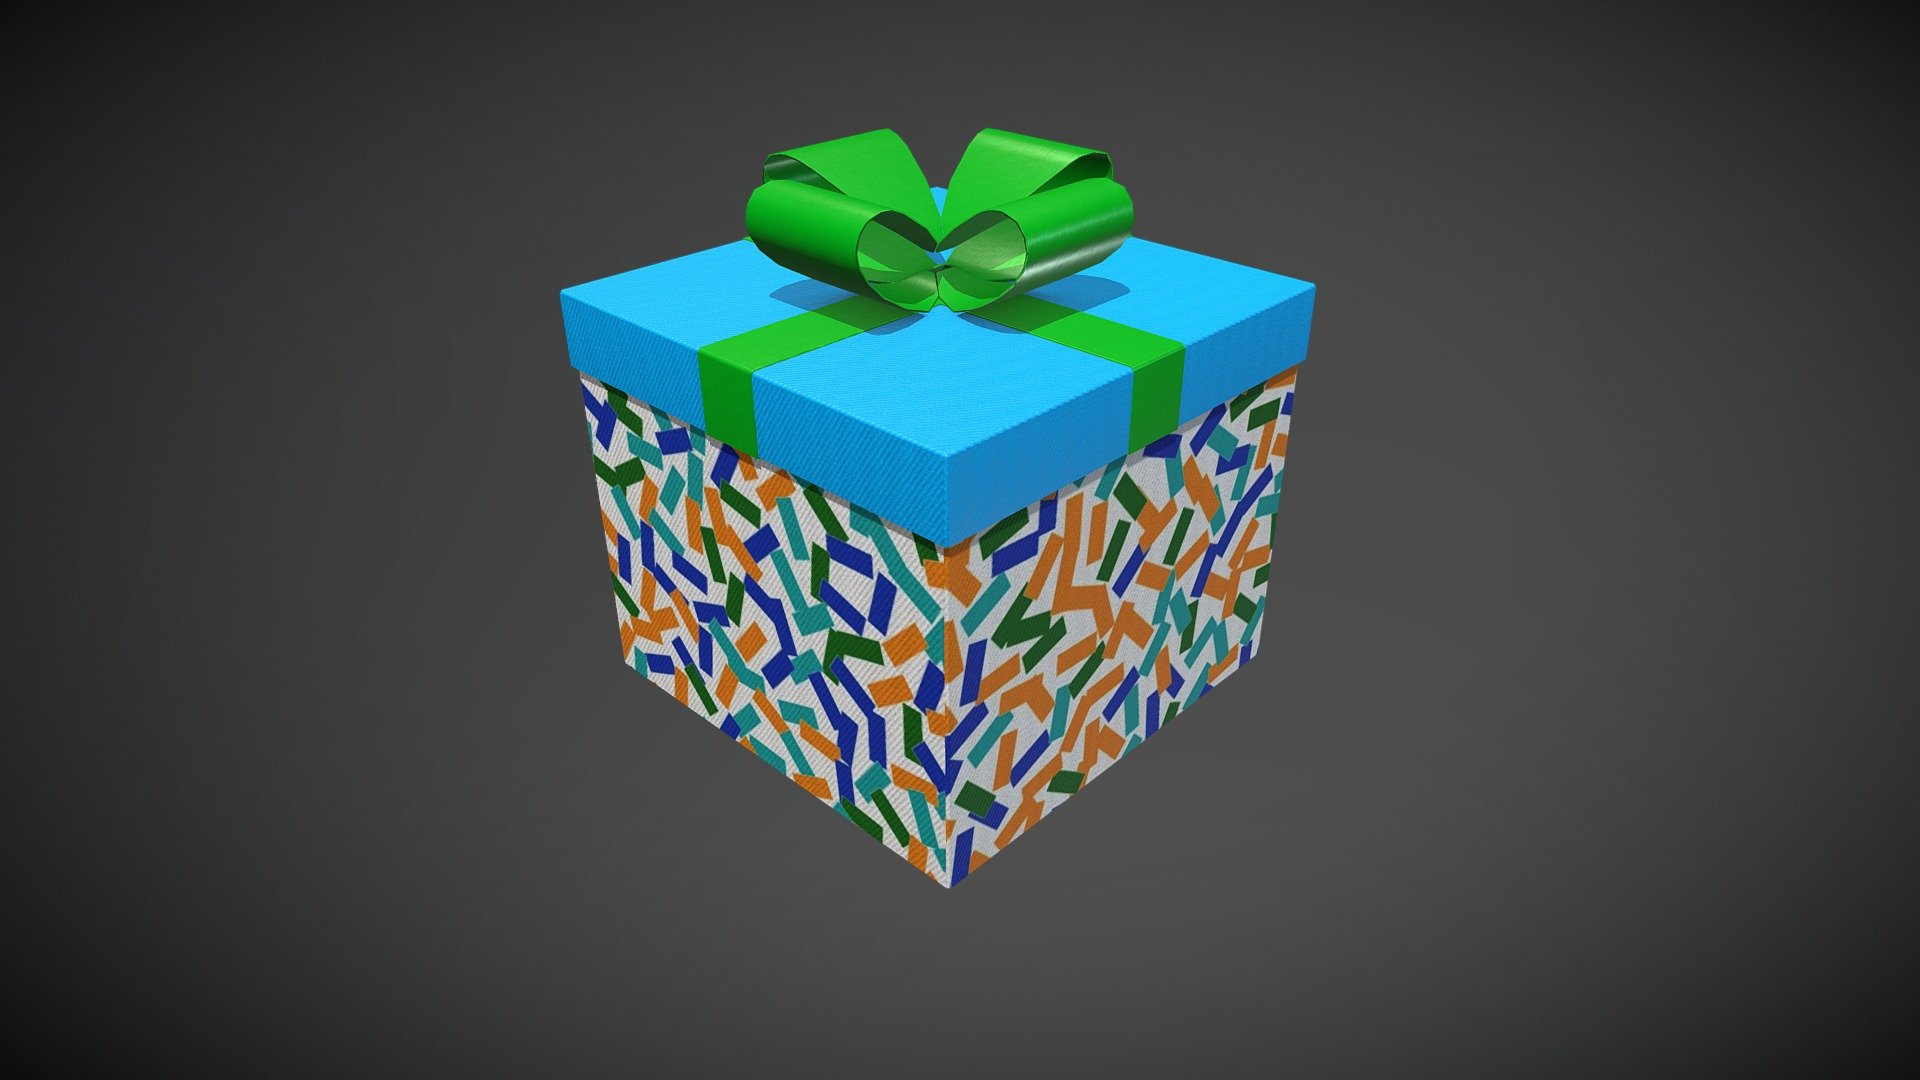 Gift box 2